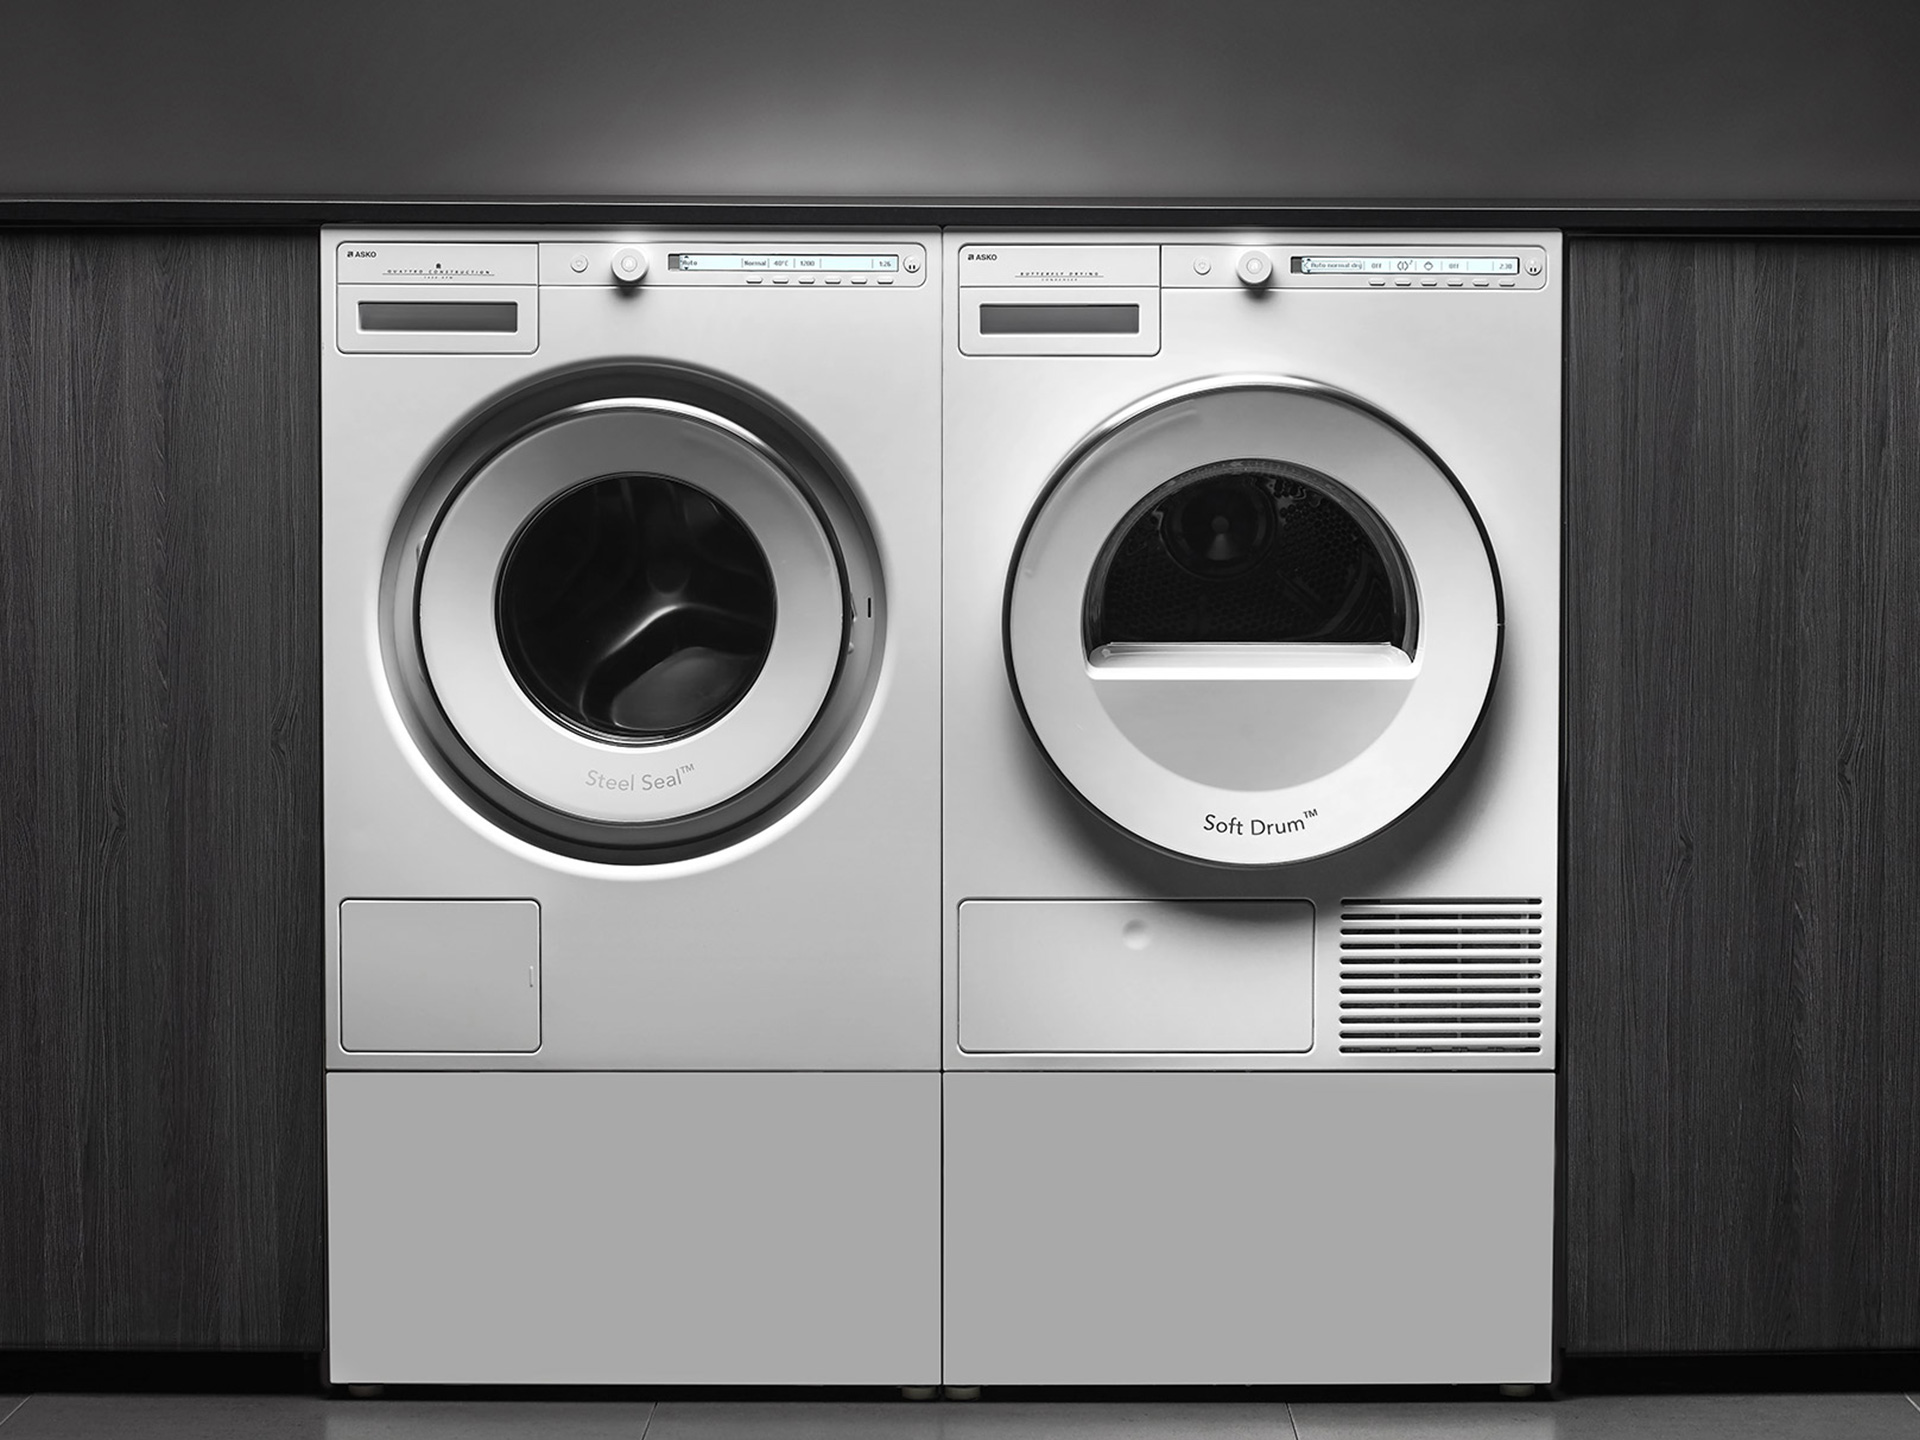 ASKO-Laundry-Washing-machines-Classic.jpg